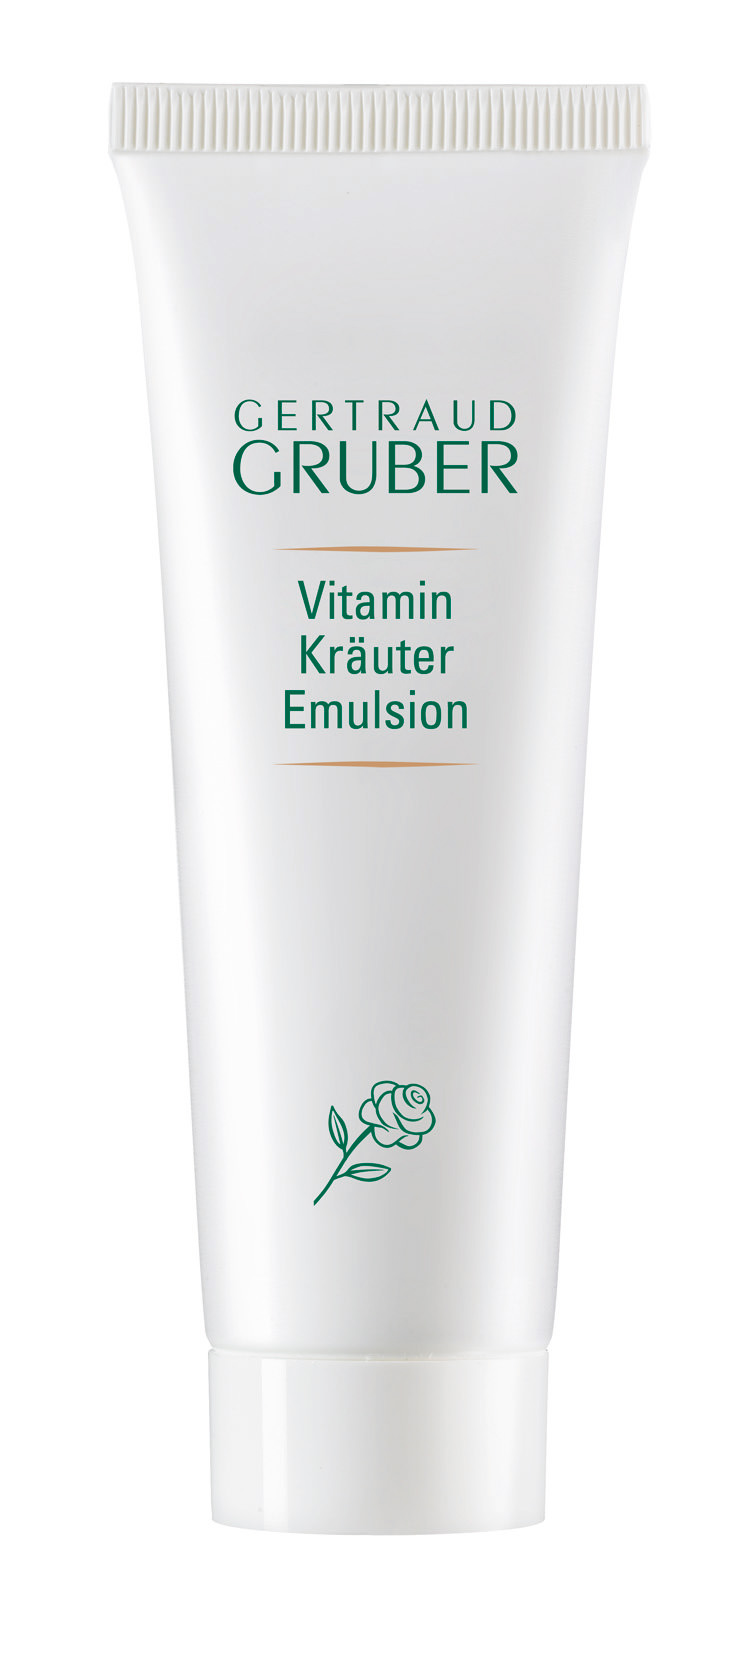 Getraud Gruber Vitamin Kräuter Emulsion